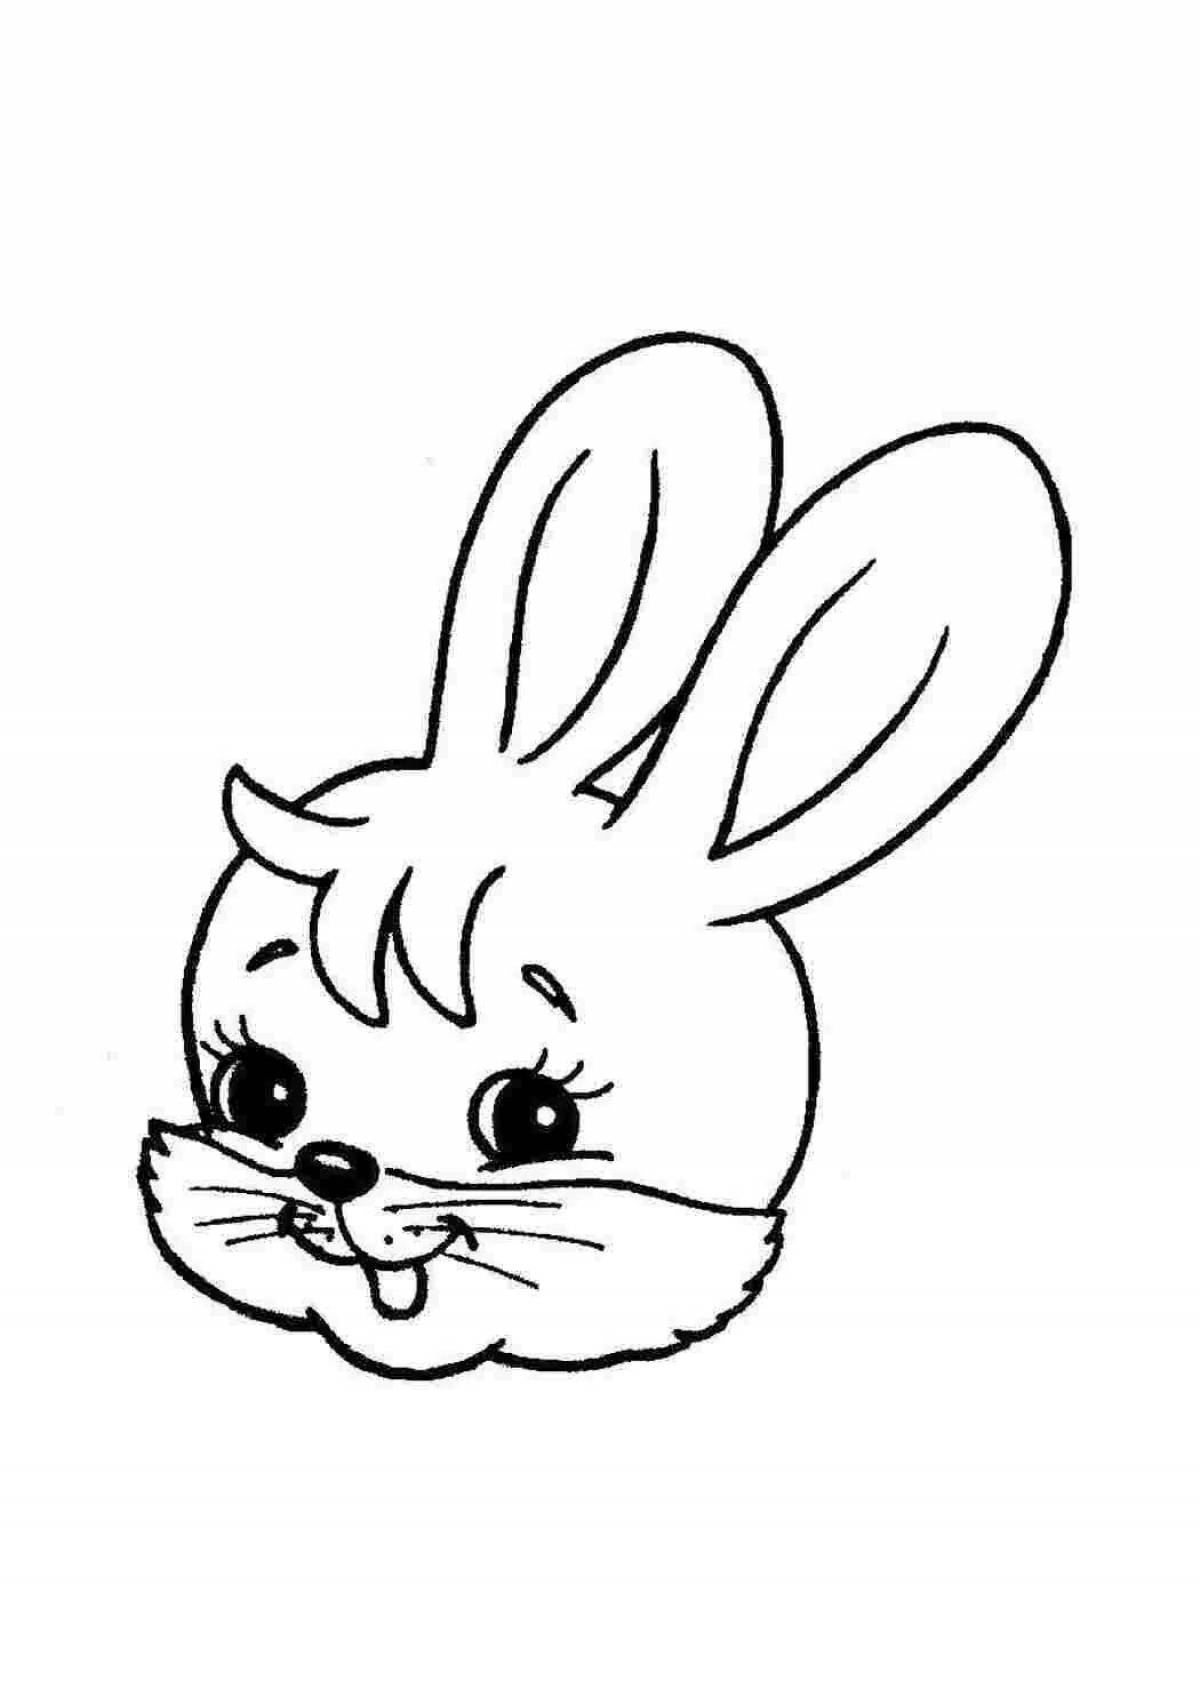 Линия головы кролика для детей или взрослых, раскраска, портрет зайца, кролика, векторная графика